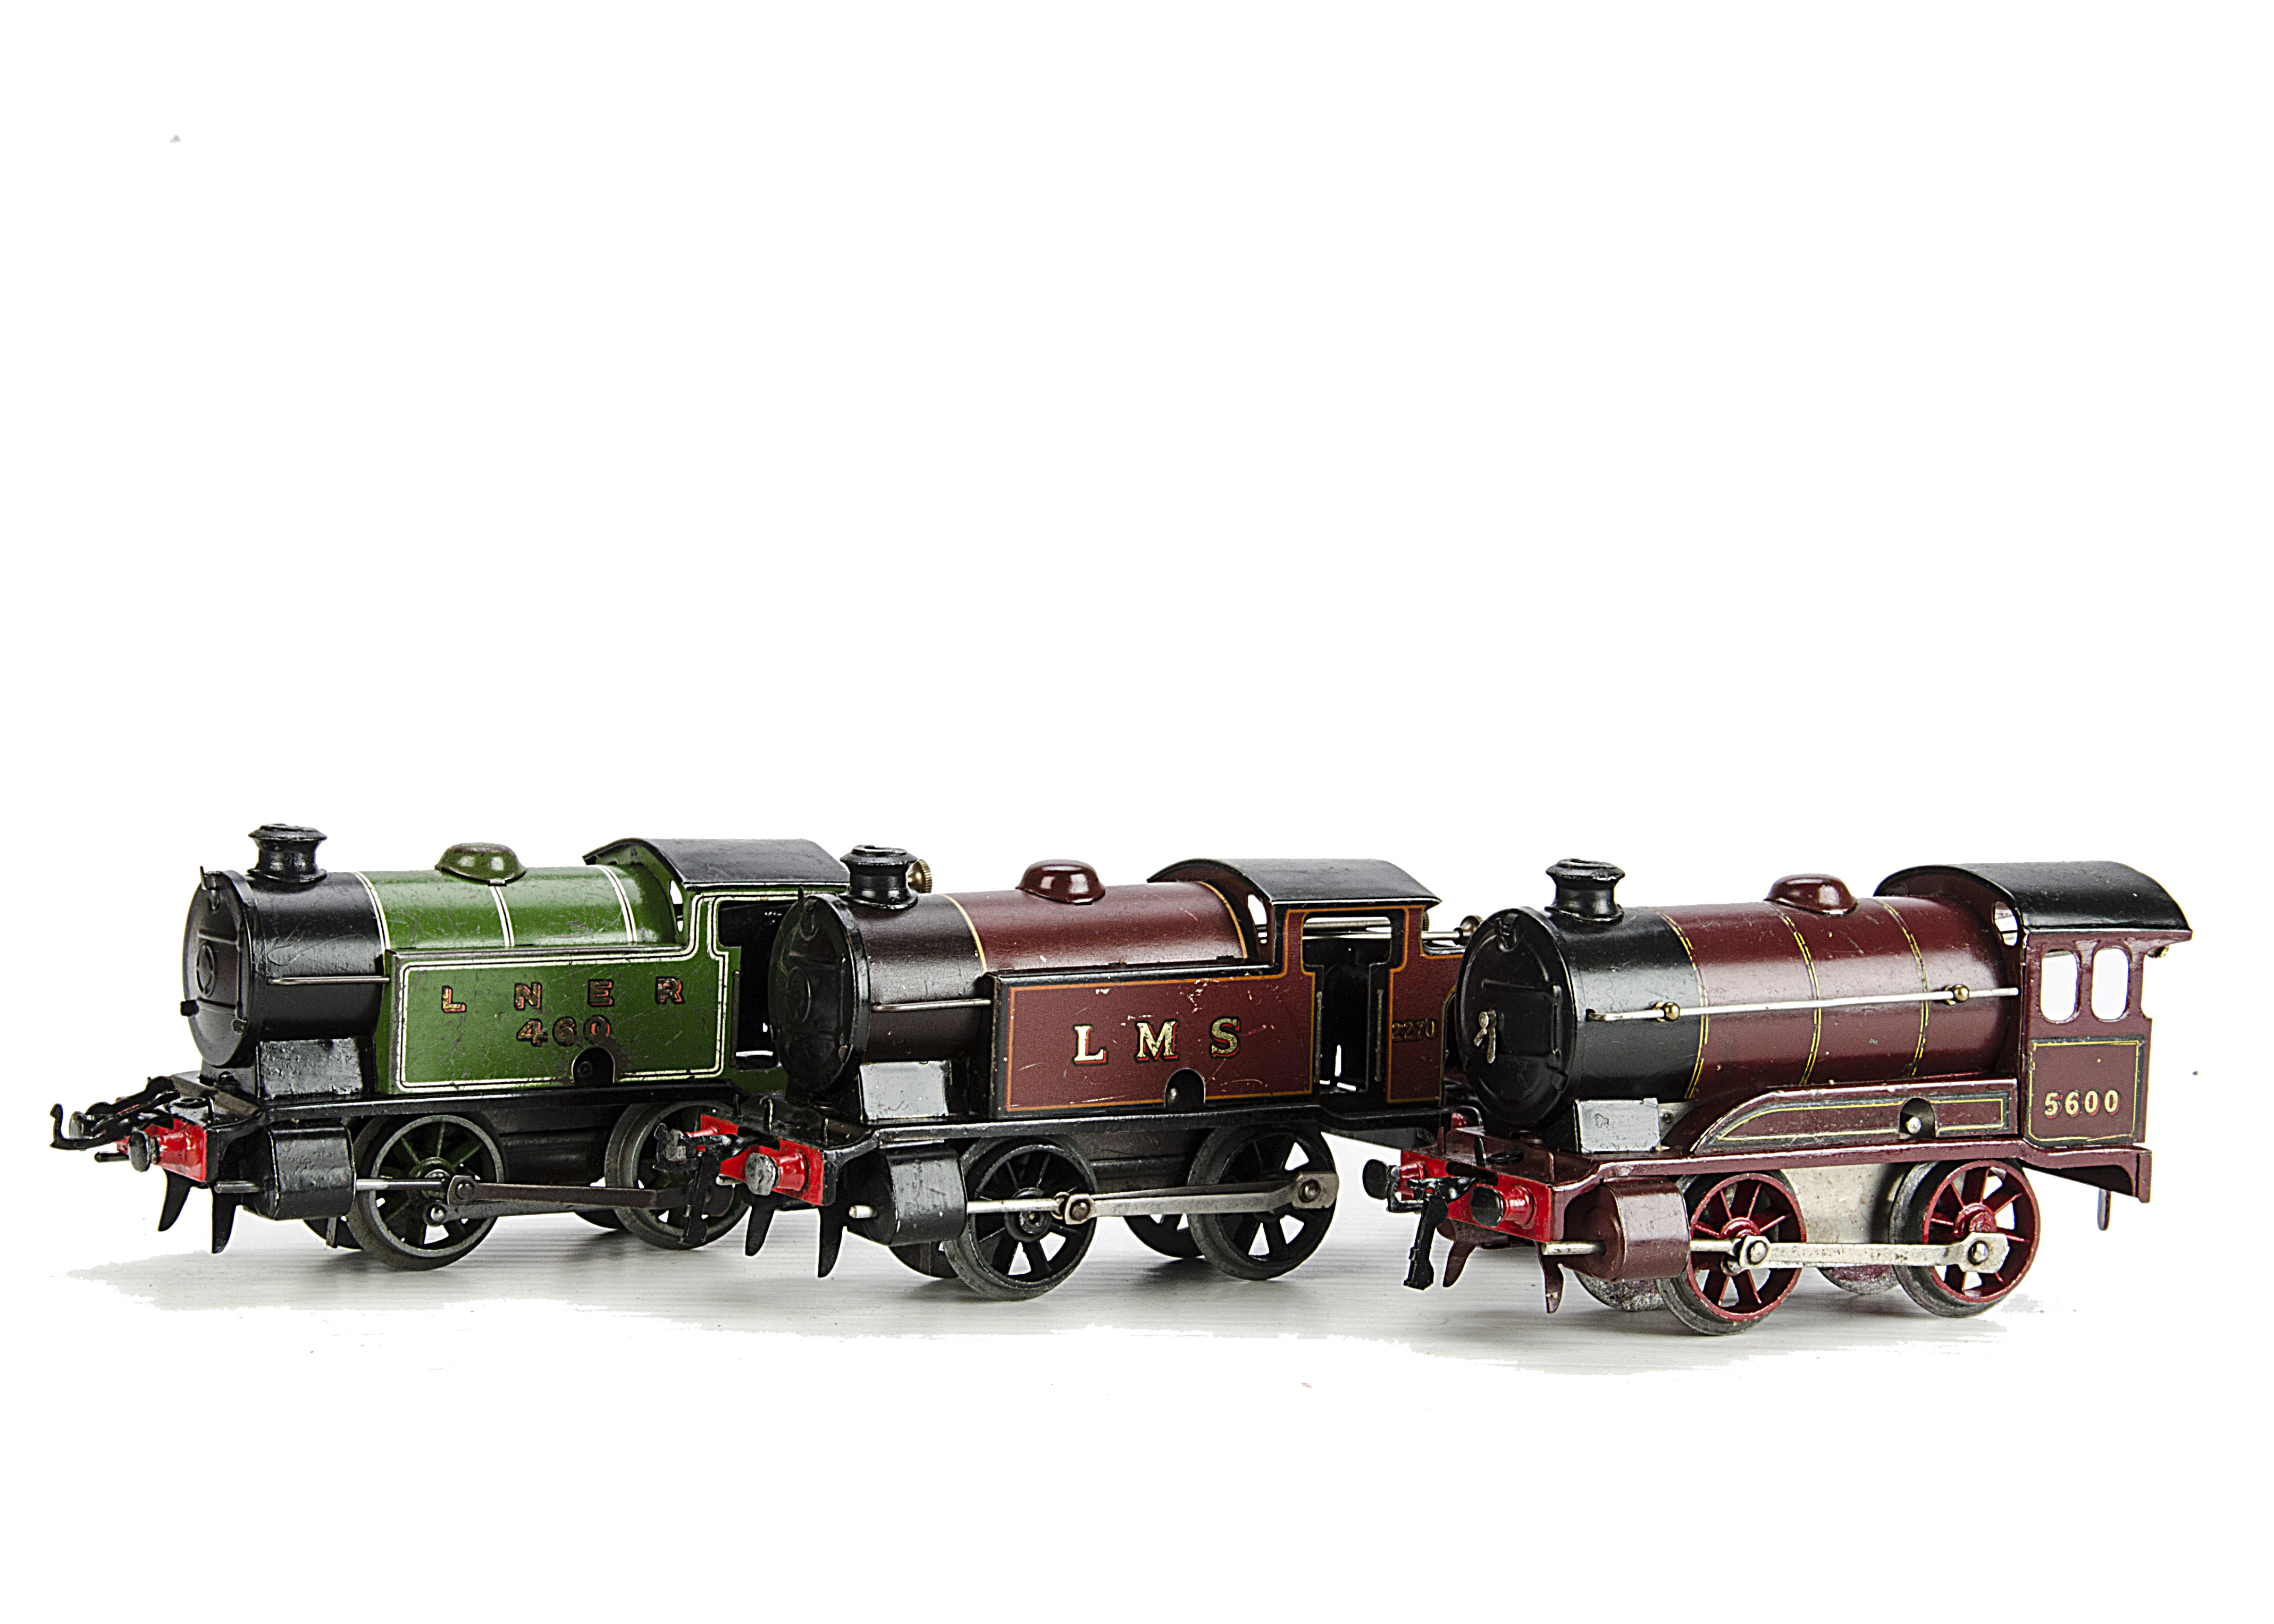 Hornby O Gauge LMS/LNER Clockwork Locomotives, including type 501 LMS locomotive 5600 with